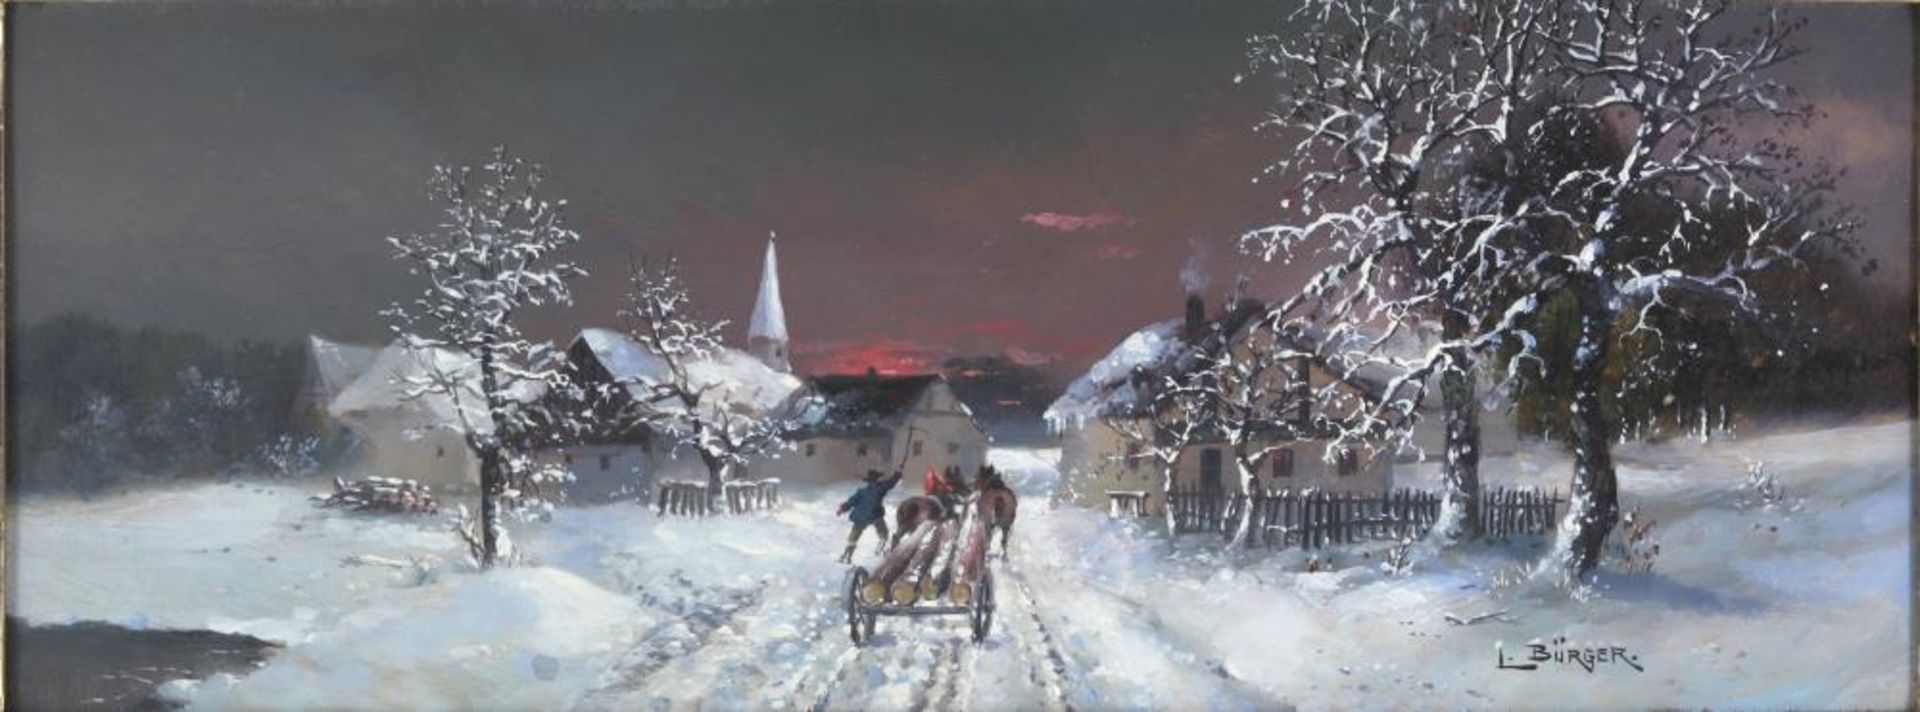 Bürger, Lothar Michael. 1866 – 1943 Wien. Holztransport im Winter. Öl auf Holz. Unten rechts